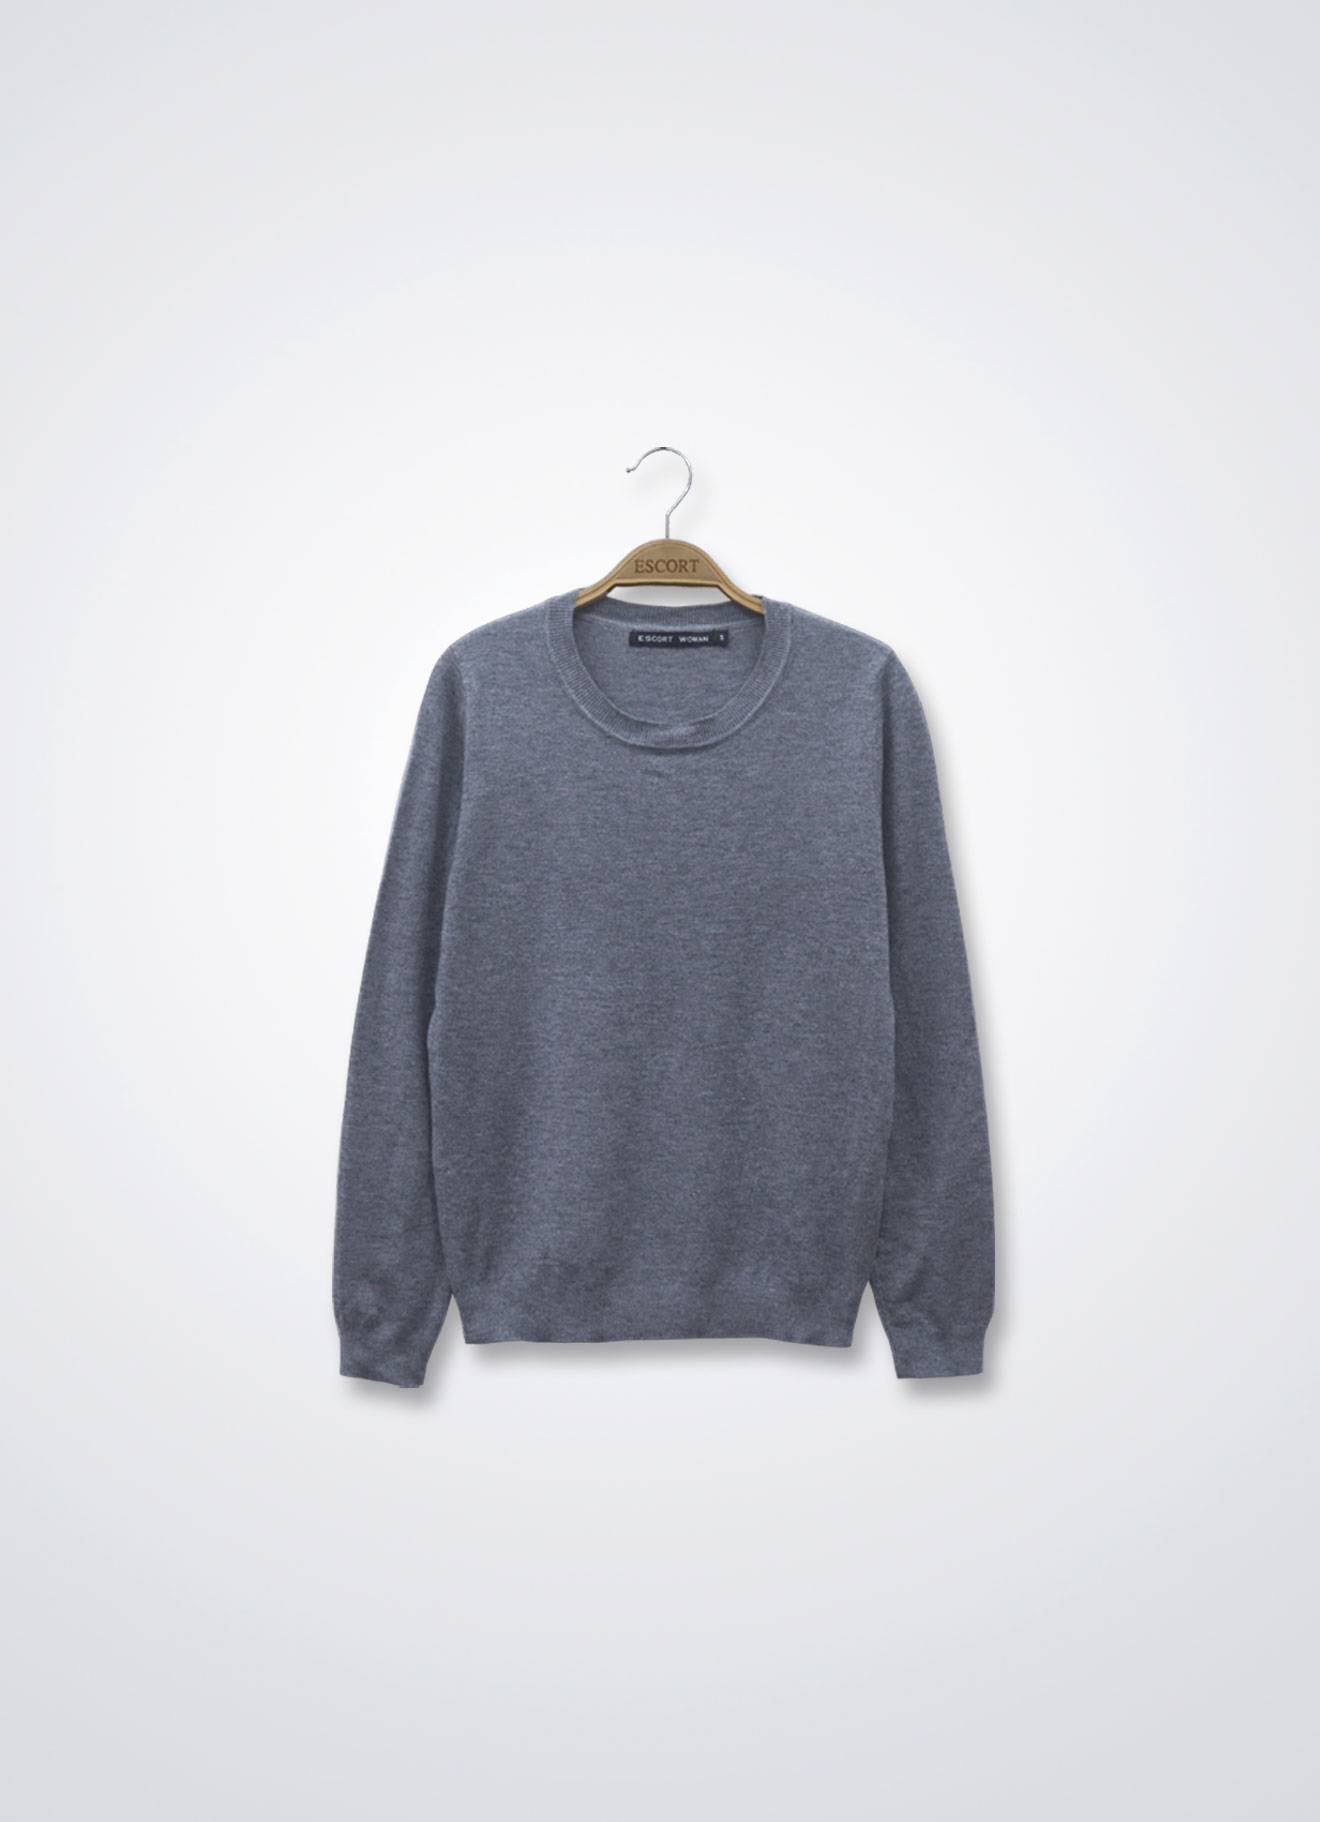 Sweatshirt | Escort